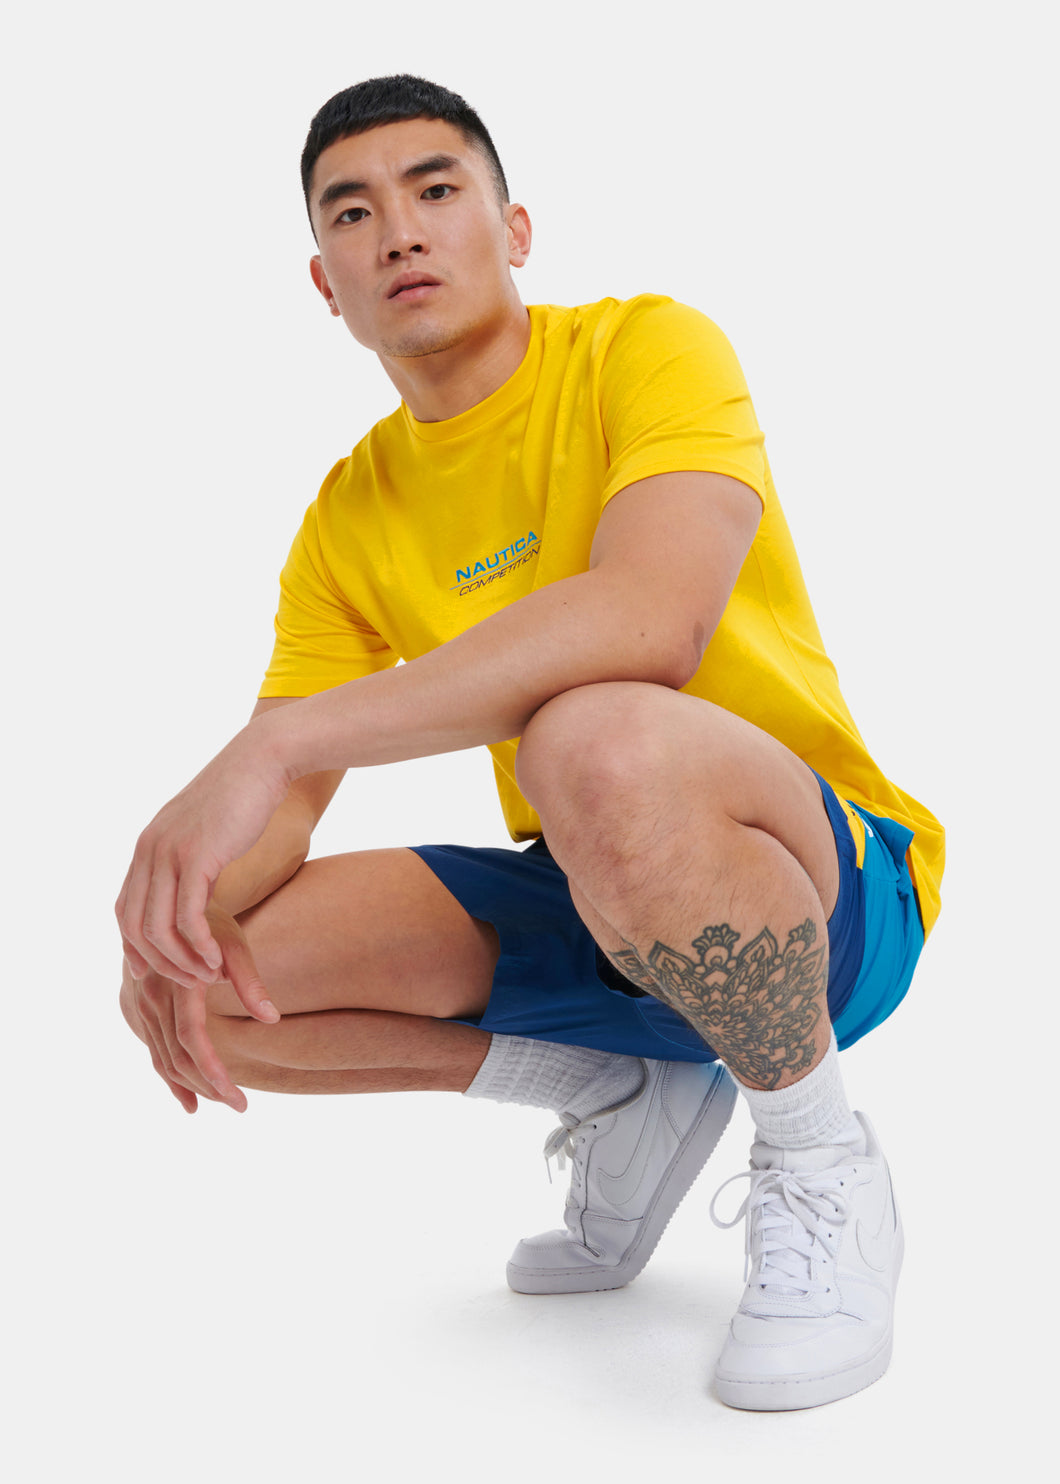 Trent T-Shirt - Yellow